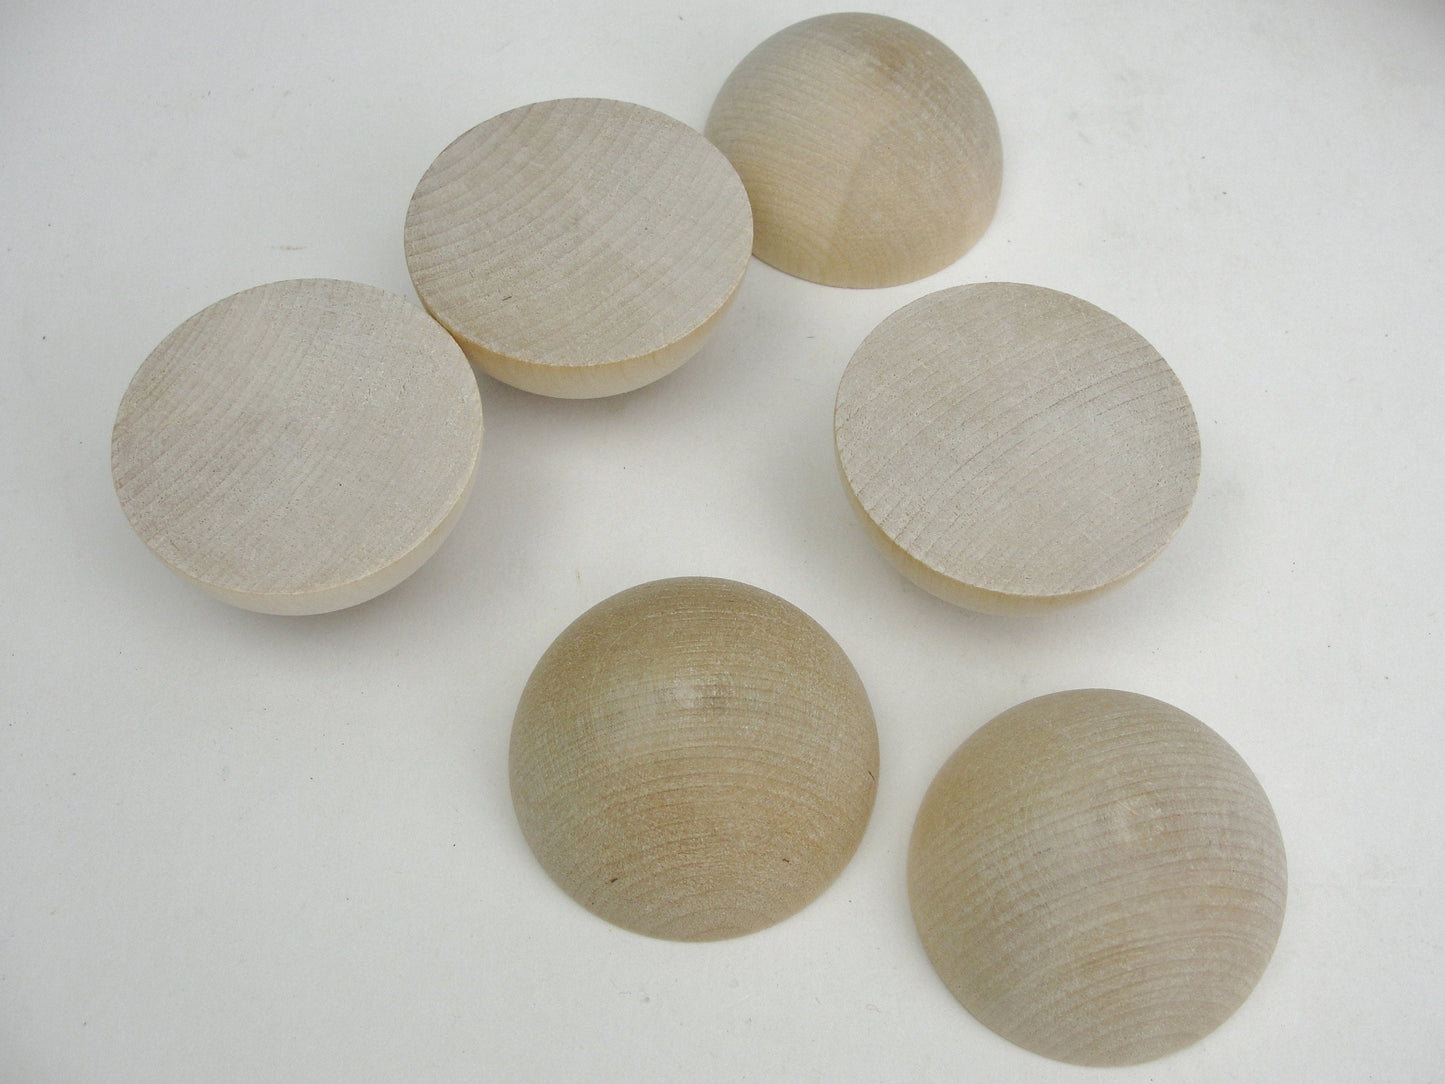 Split wooden ball 2" set of 6